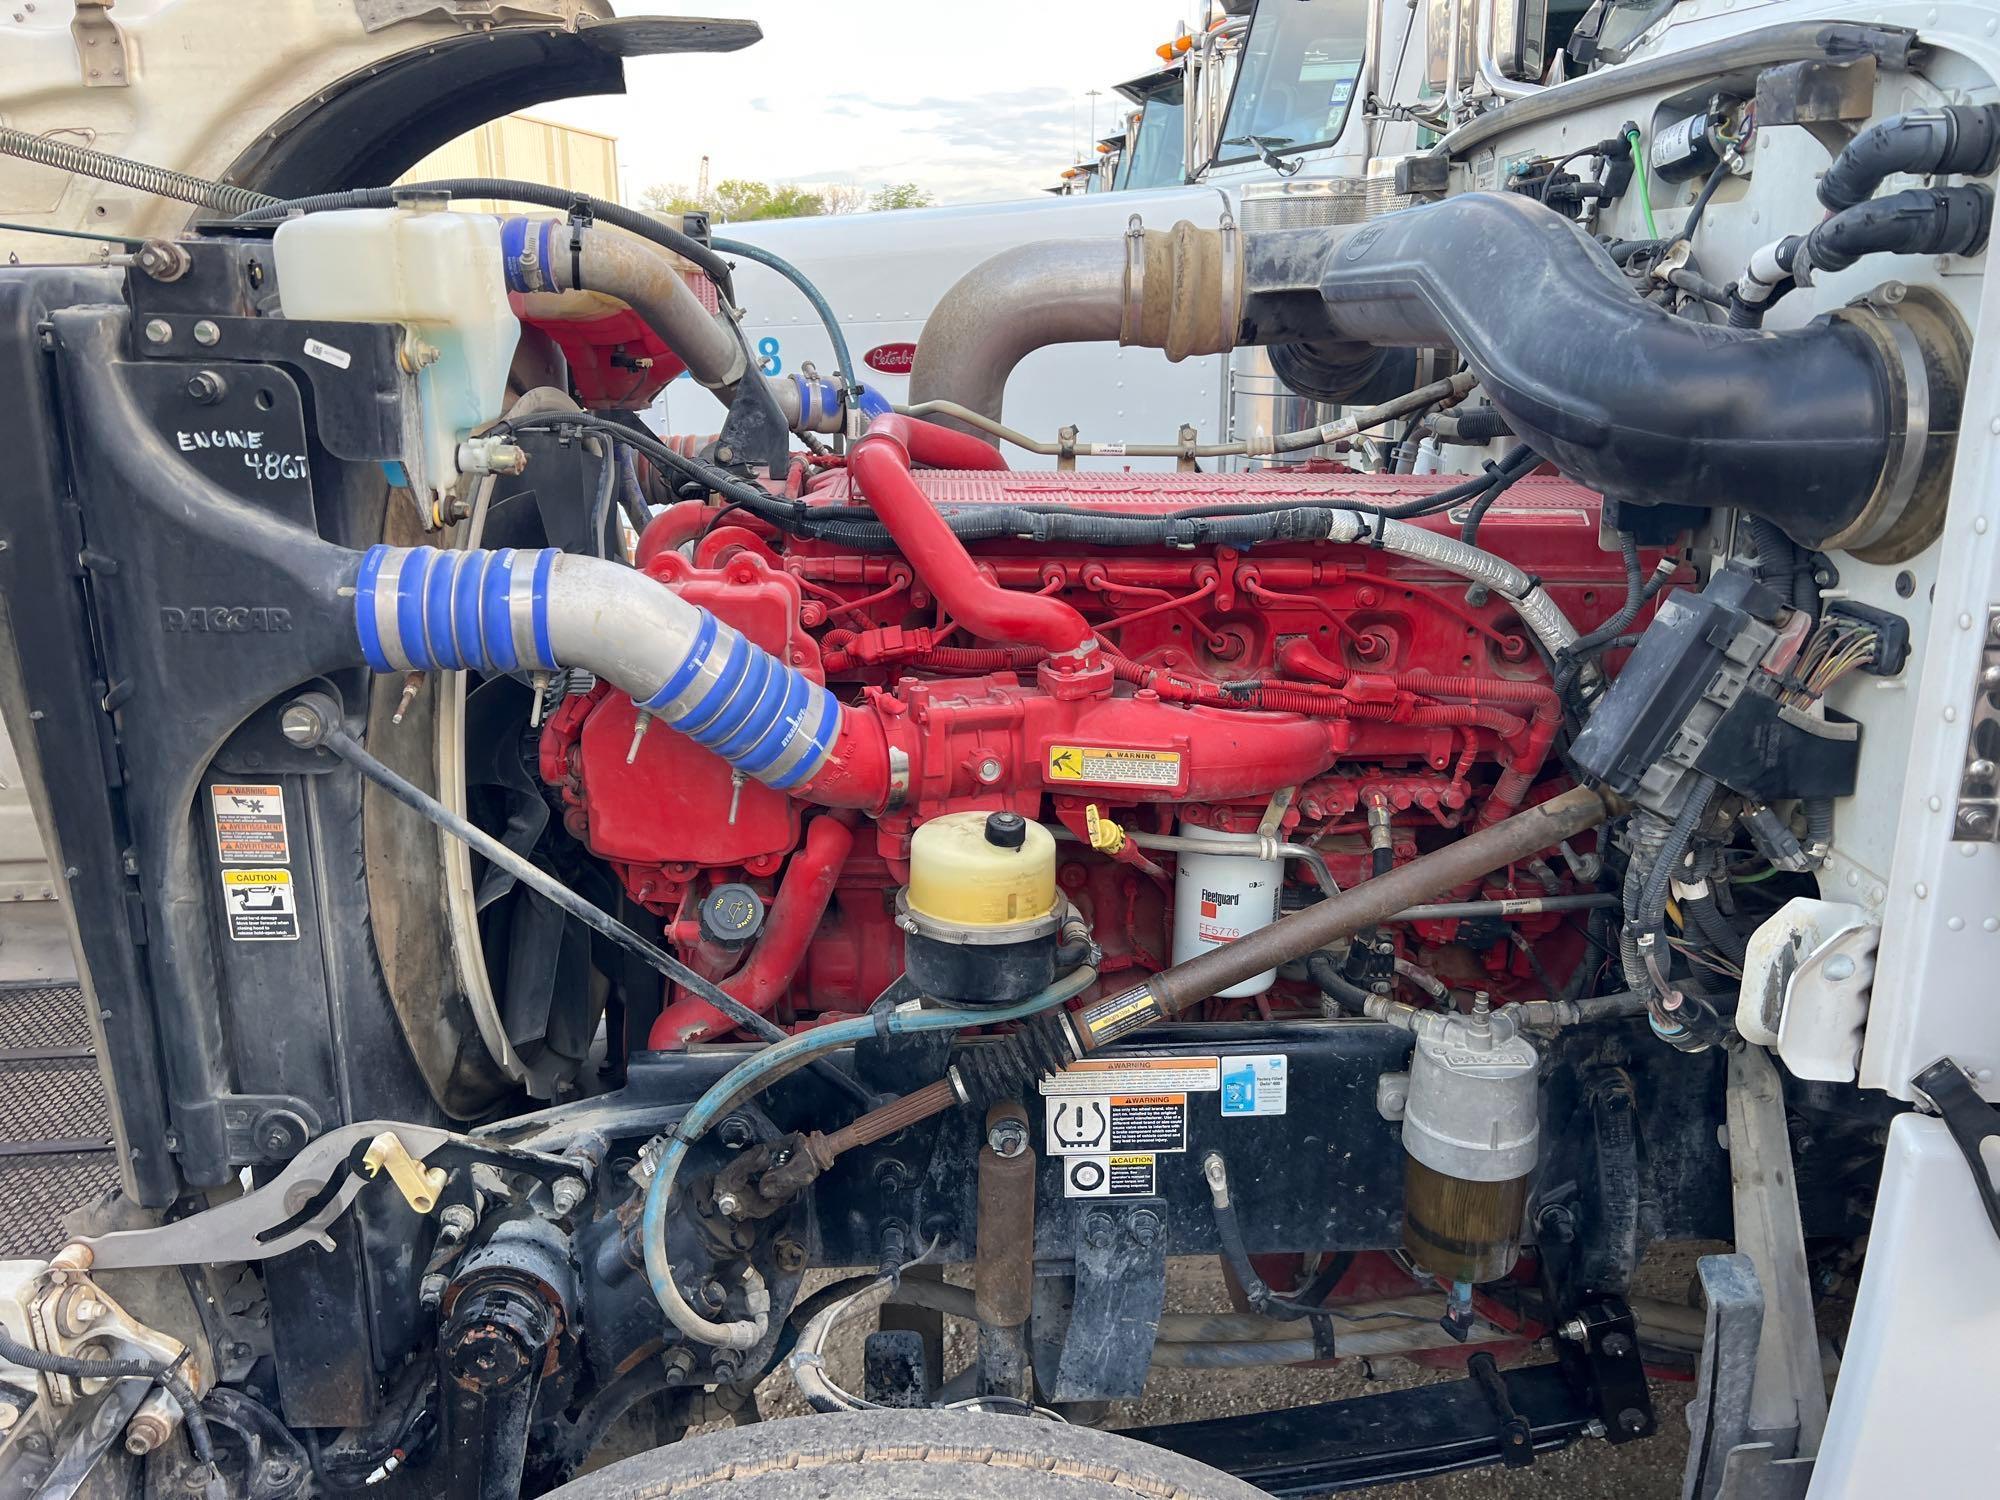 2017 PETERBILT 389 TRUCK TRACTOR VN:1XPXD49X2HD362232...powered by Cummins ISX15 diesel engine,